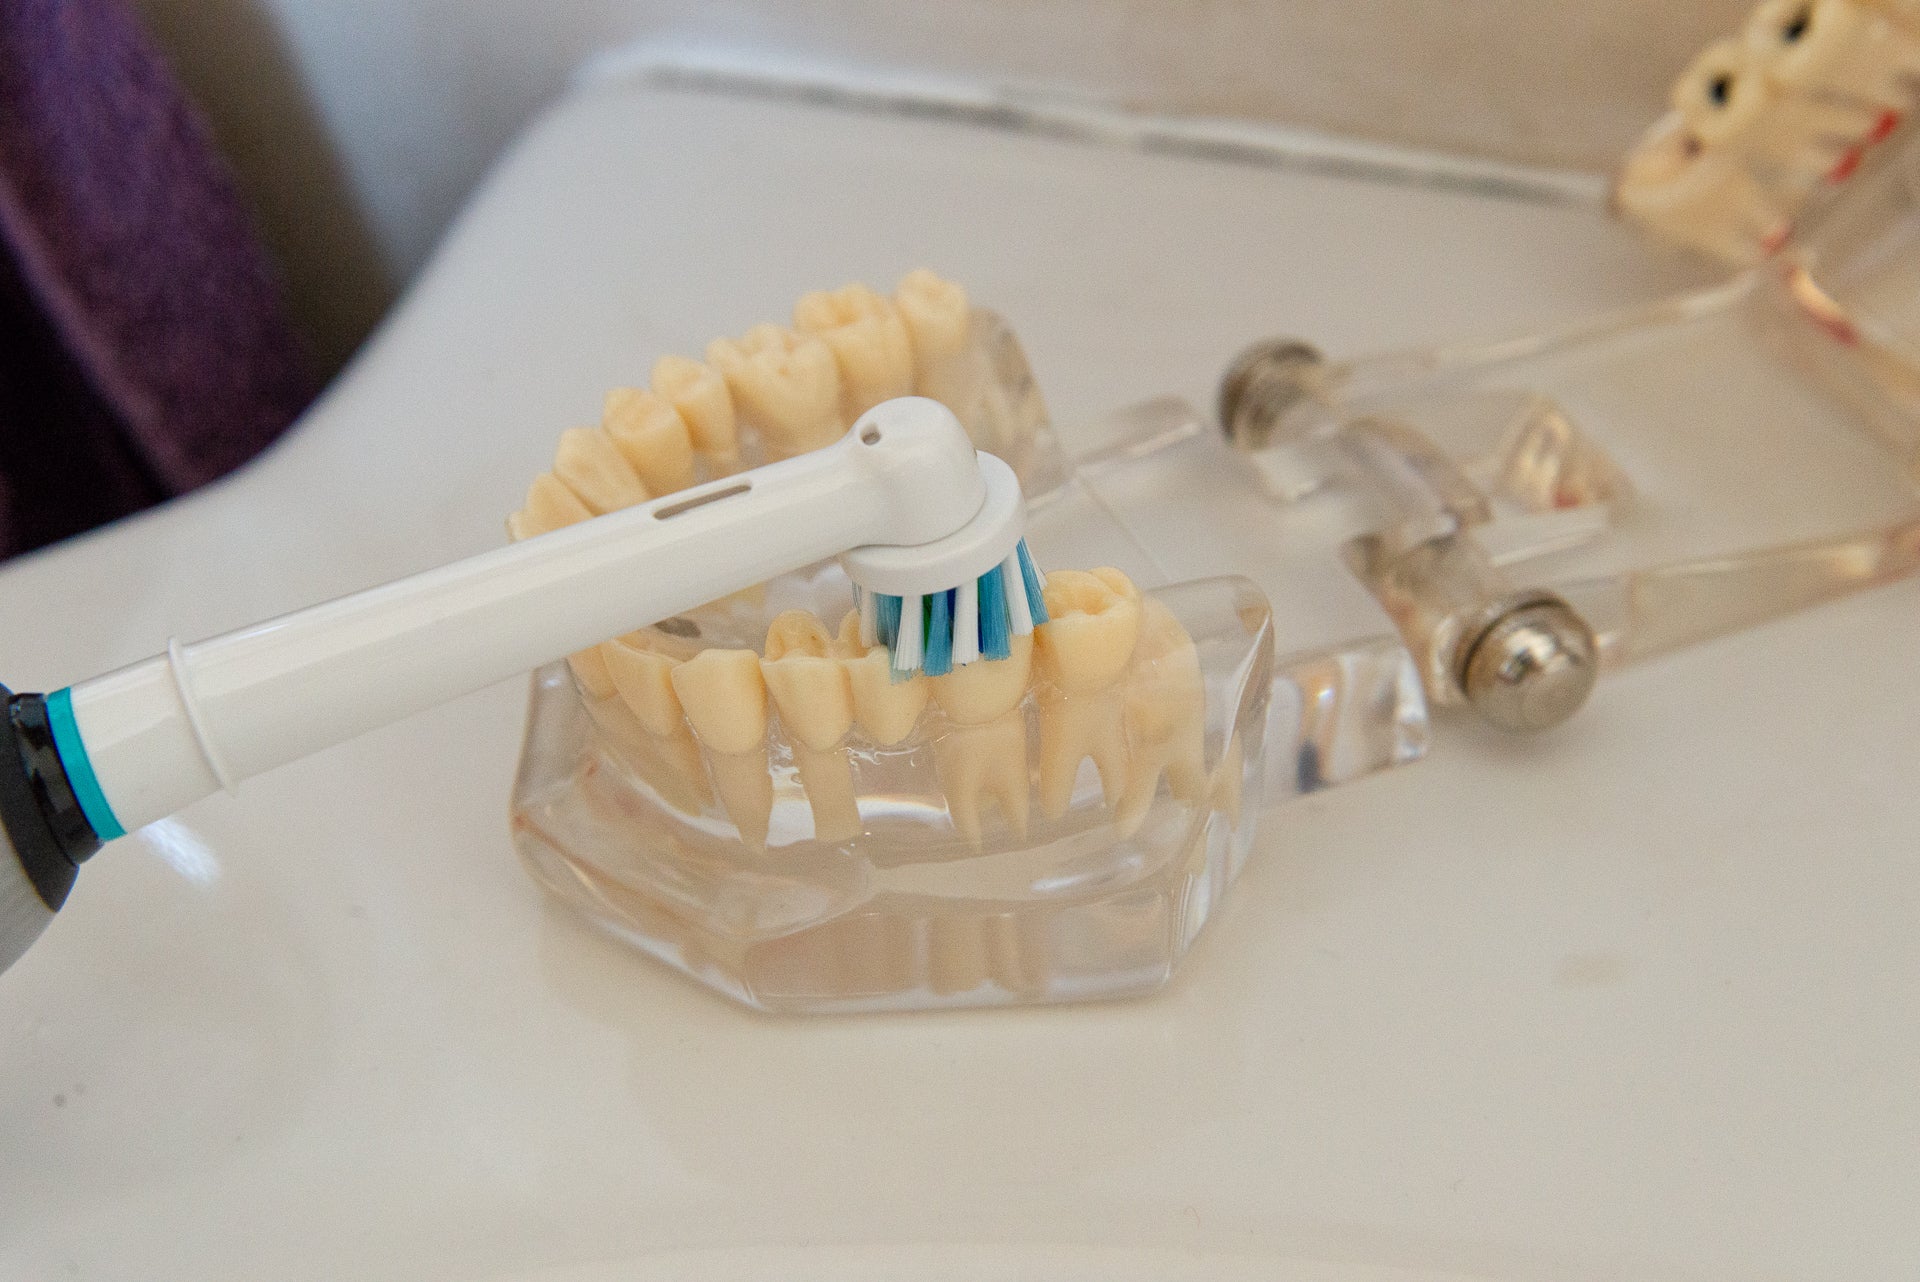 Oral-B Genius 9000 cleaning test teeth